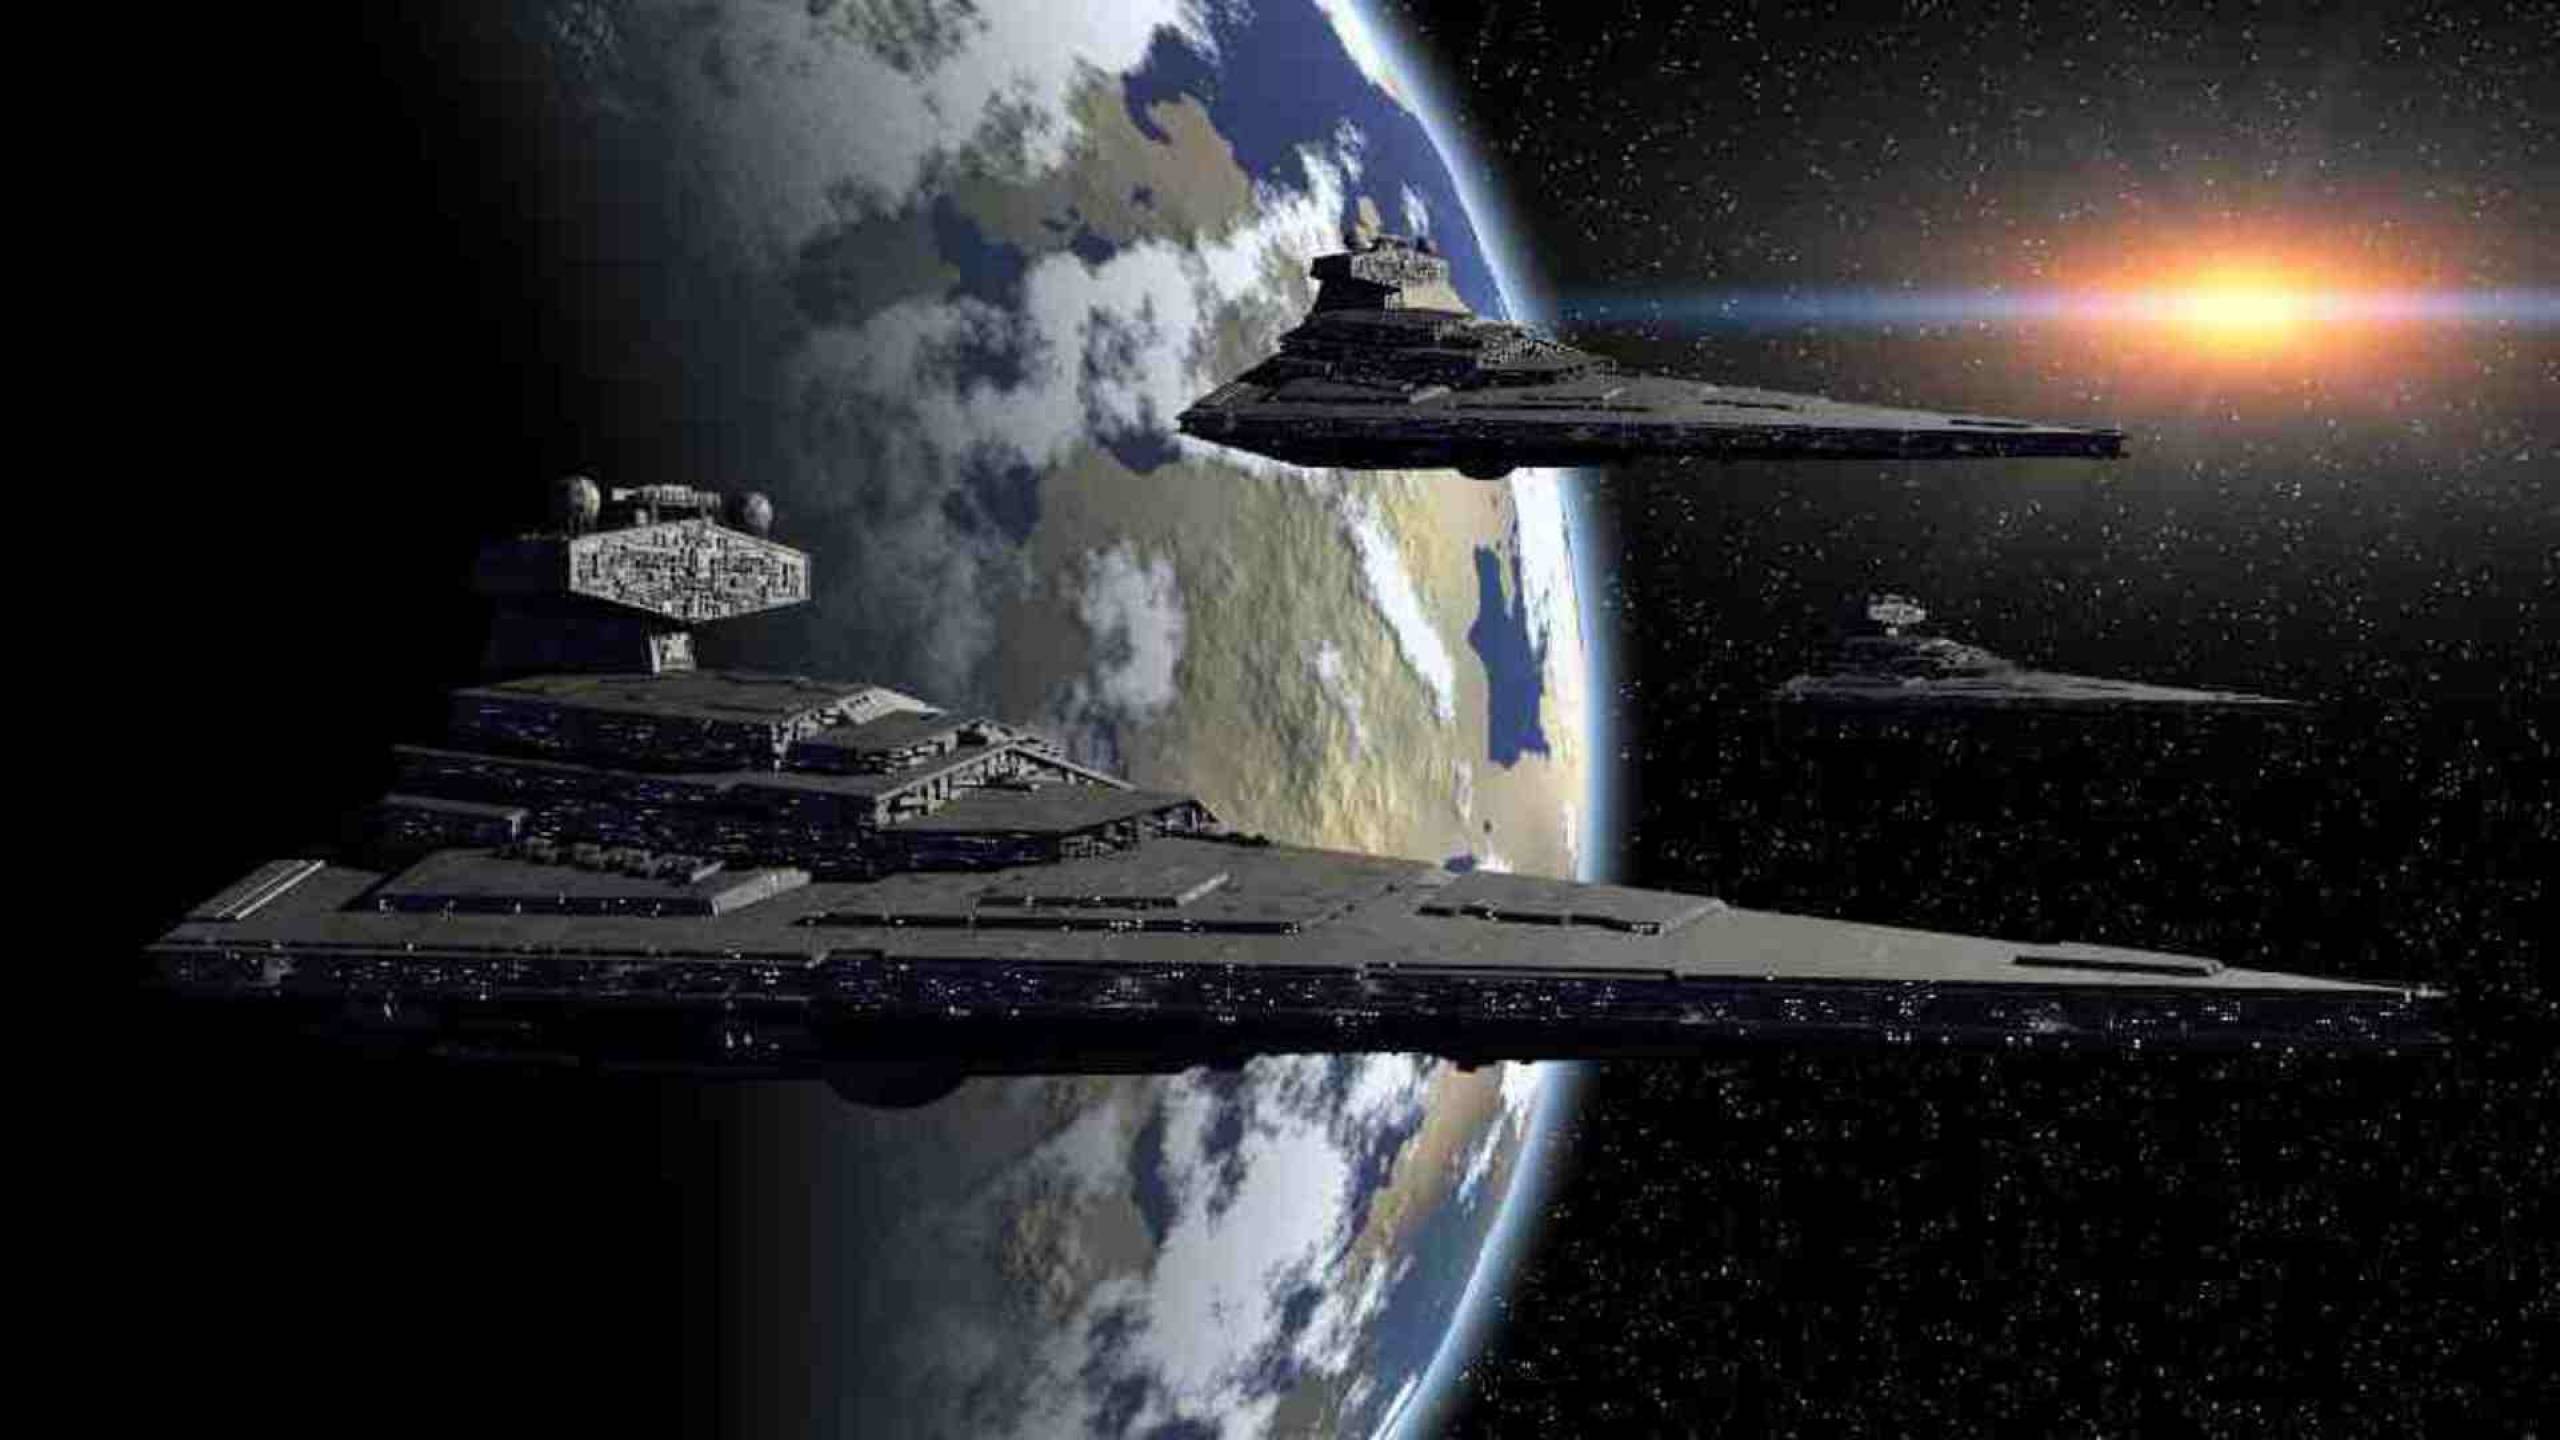 Best Star Wars Rebels Images On Pinterest Star Wars Star Wars Stuff And Starwars